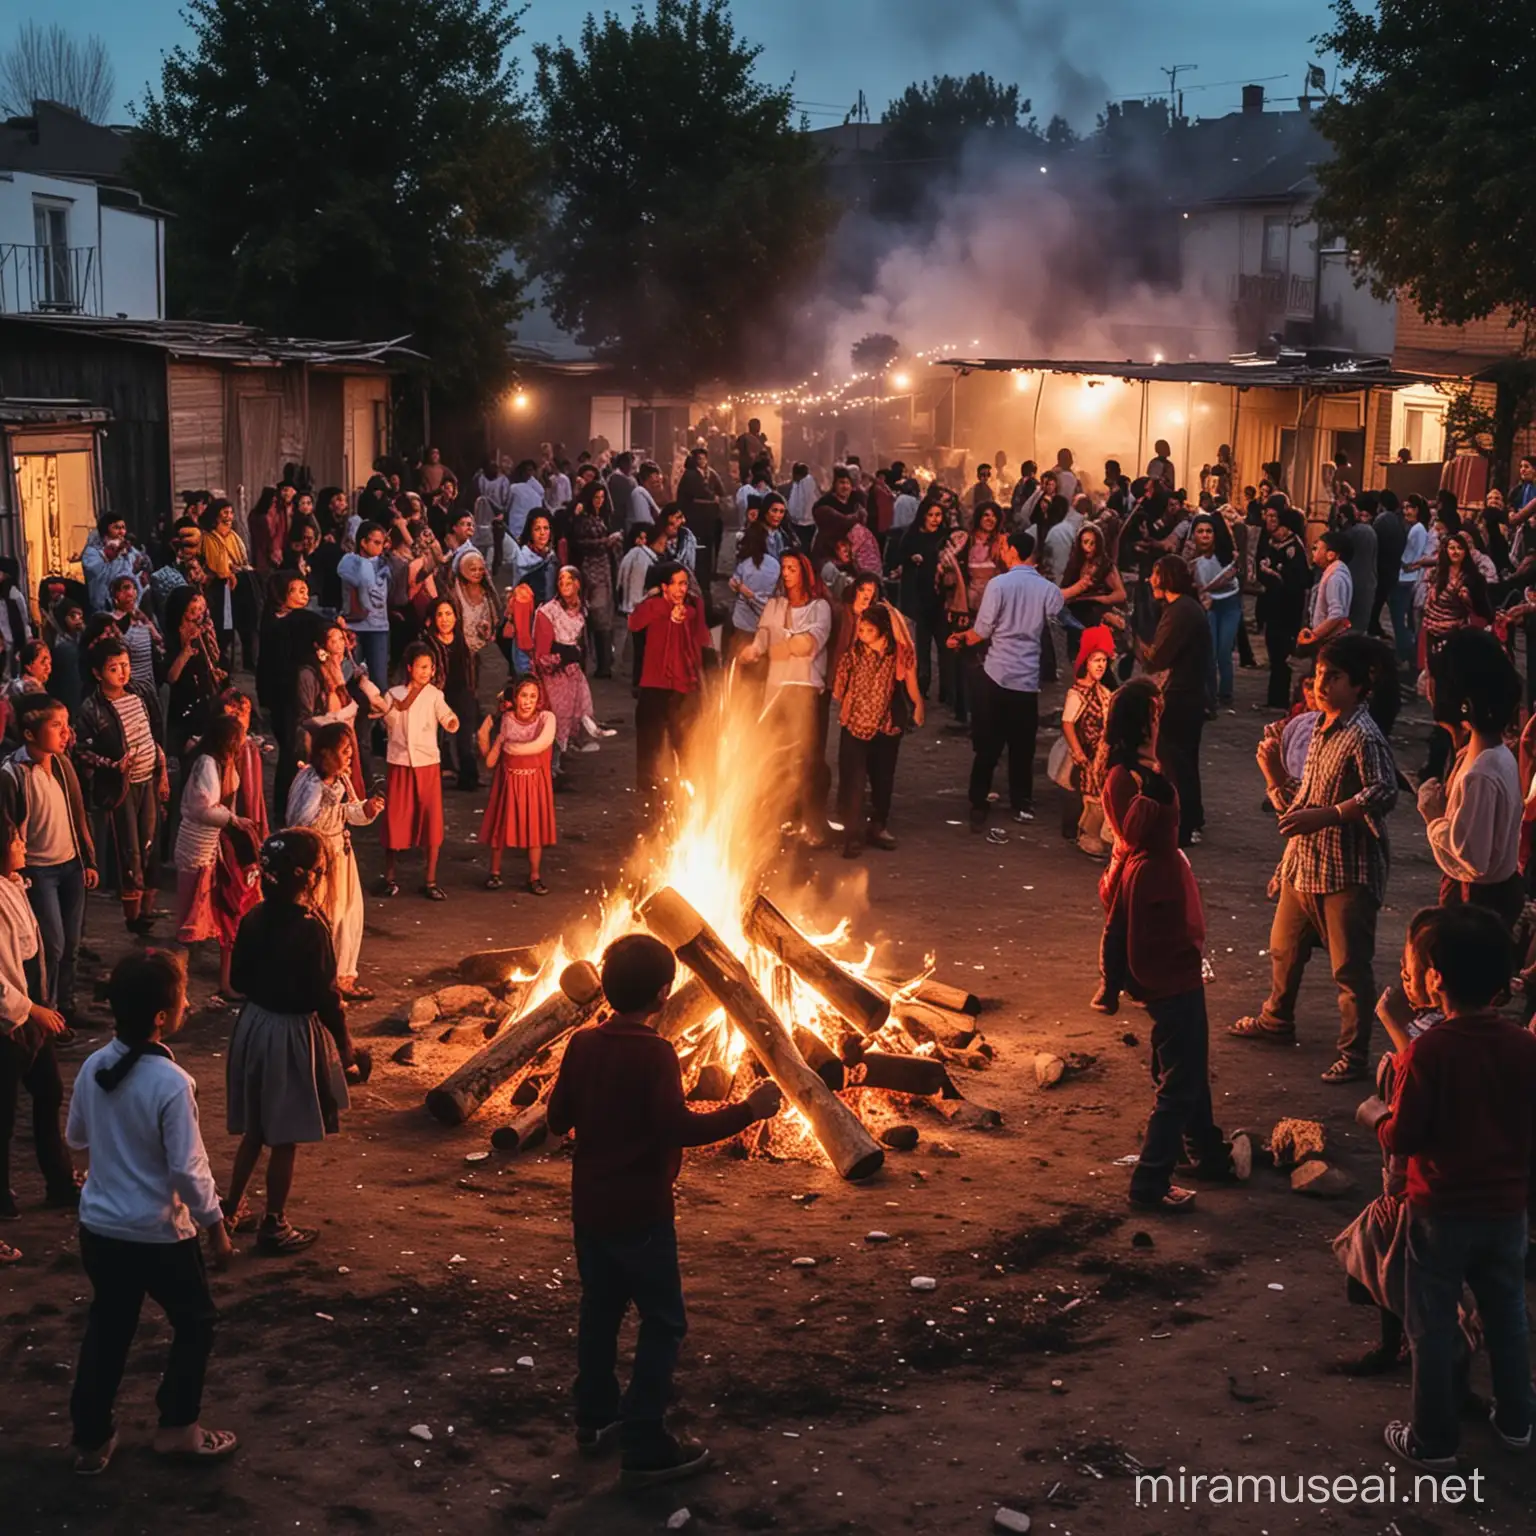 Zigeuner feiern auf einem Hinterhof in einem Wohnviertel, in der Mitte ein großes Lagerfeuer, Kinder tanzen und spielen, viele Menschen, realfoto